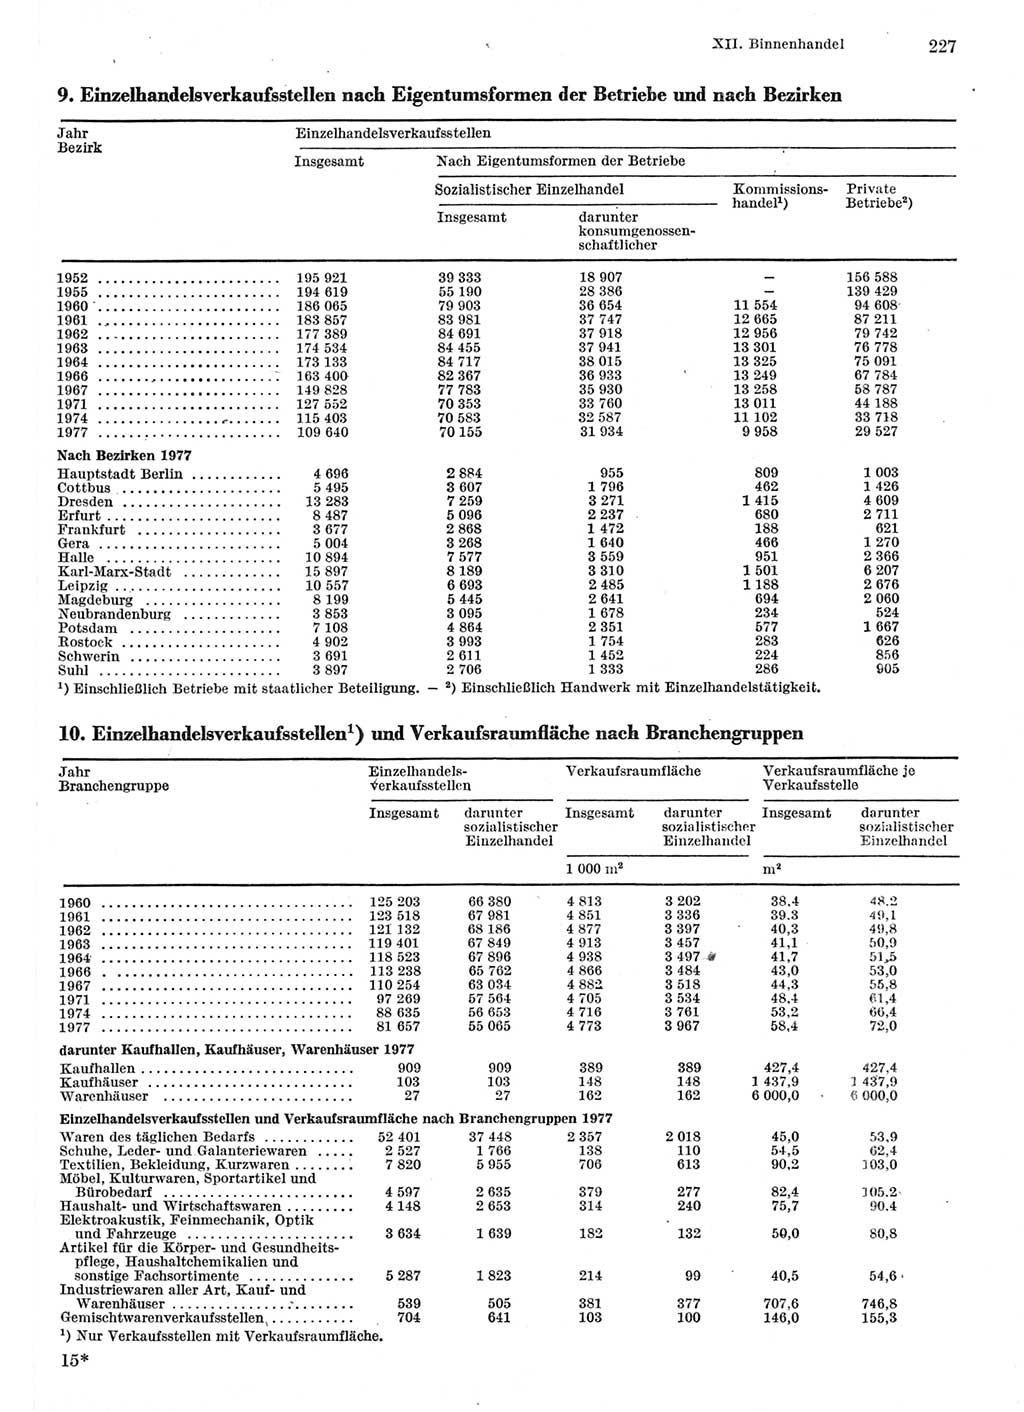 Statistisches Jahrbuch der Deutschen Demokratischen Republik (DDR) 1981, Seite 227 (Stat. Jb. DDR 1981, S. 227)